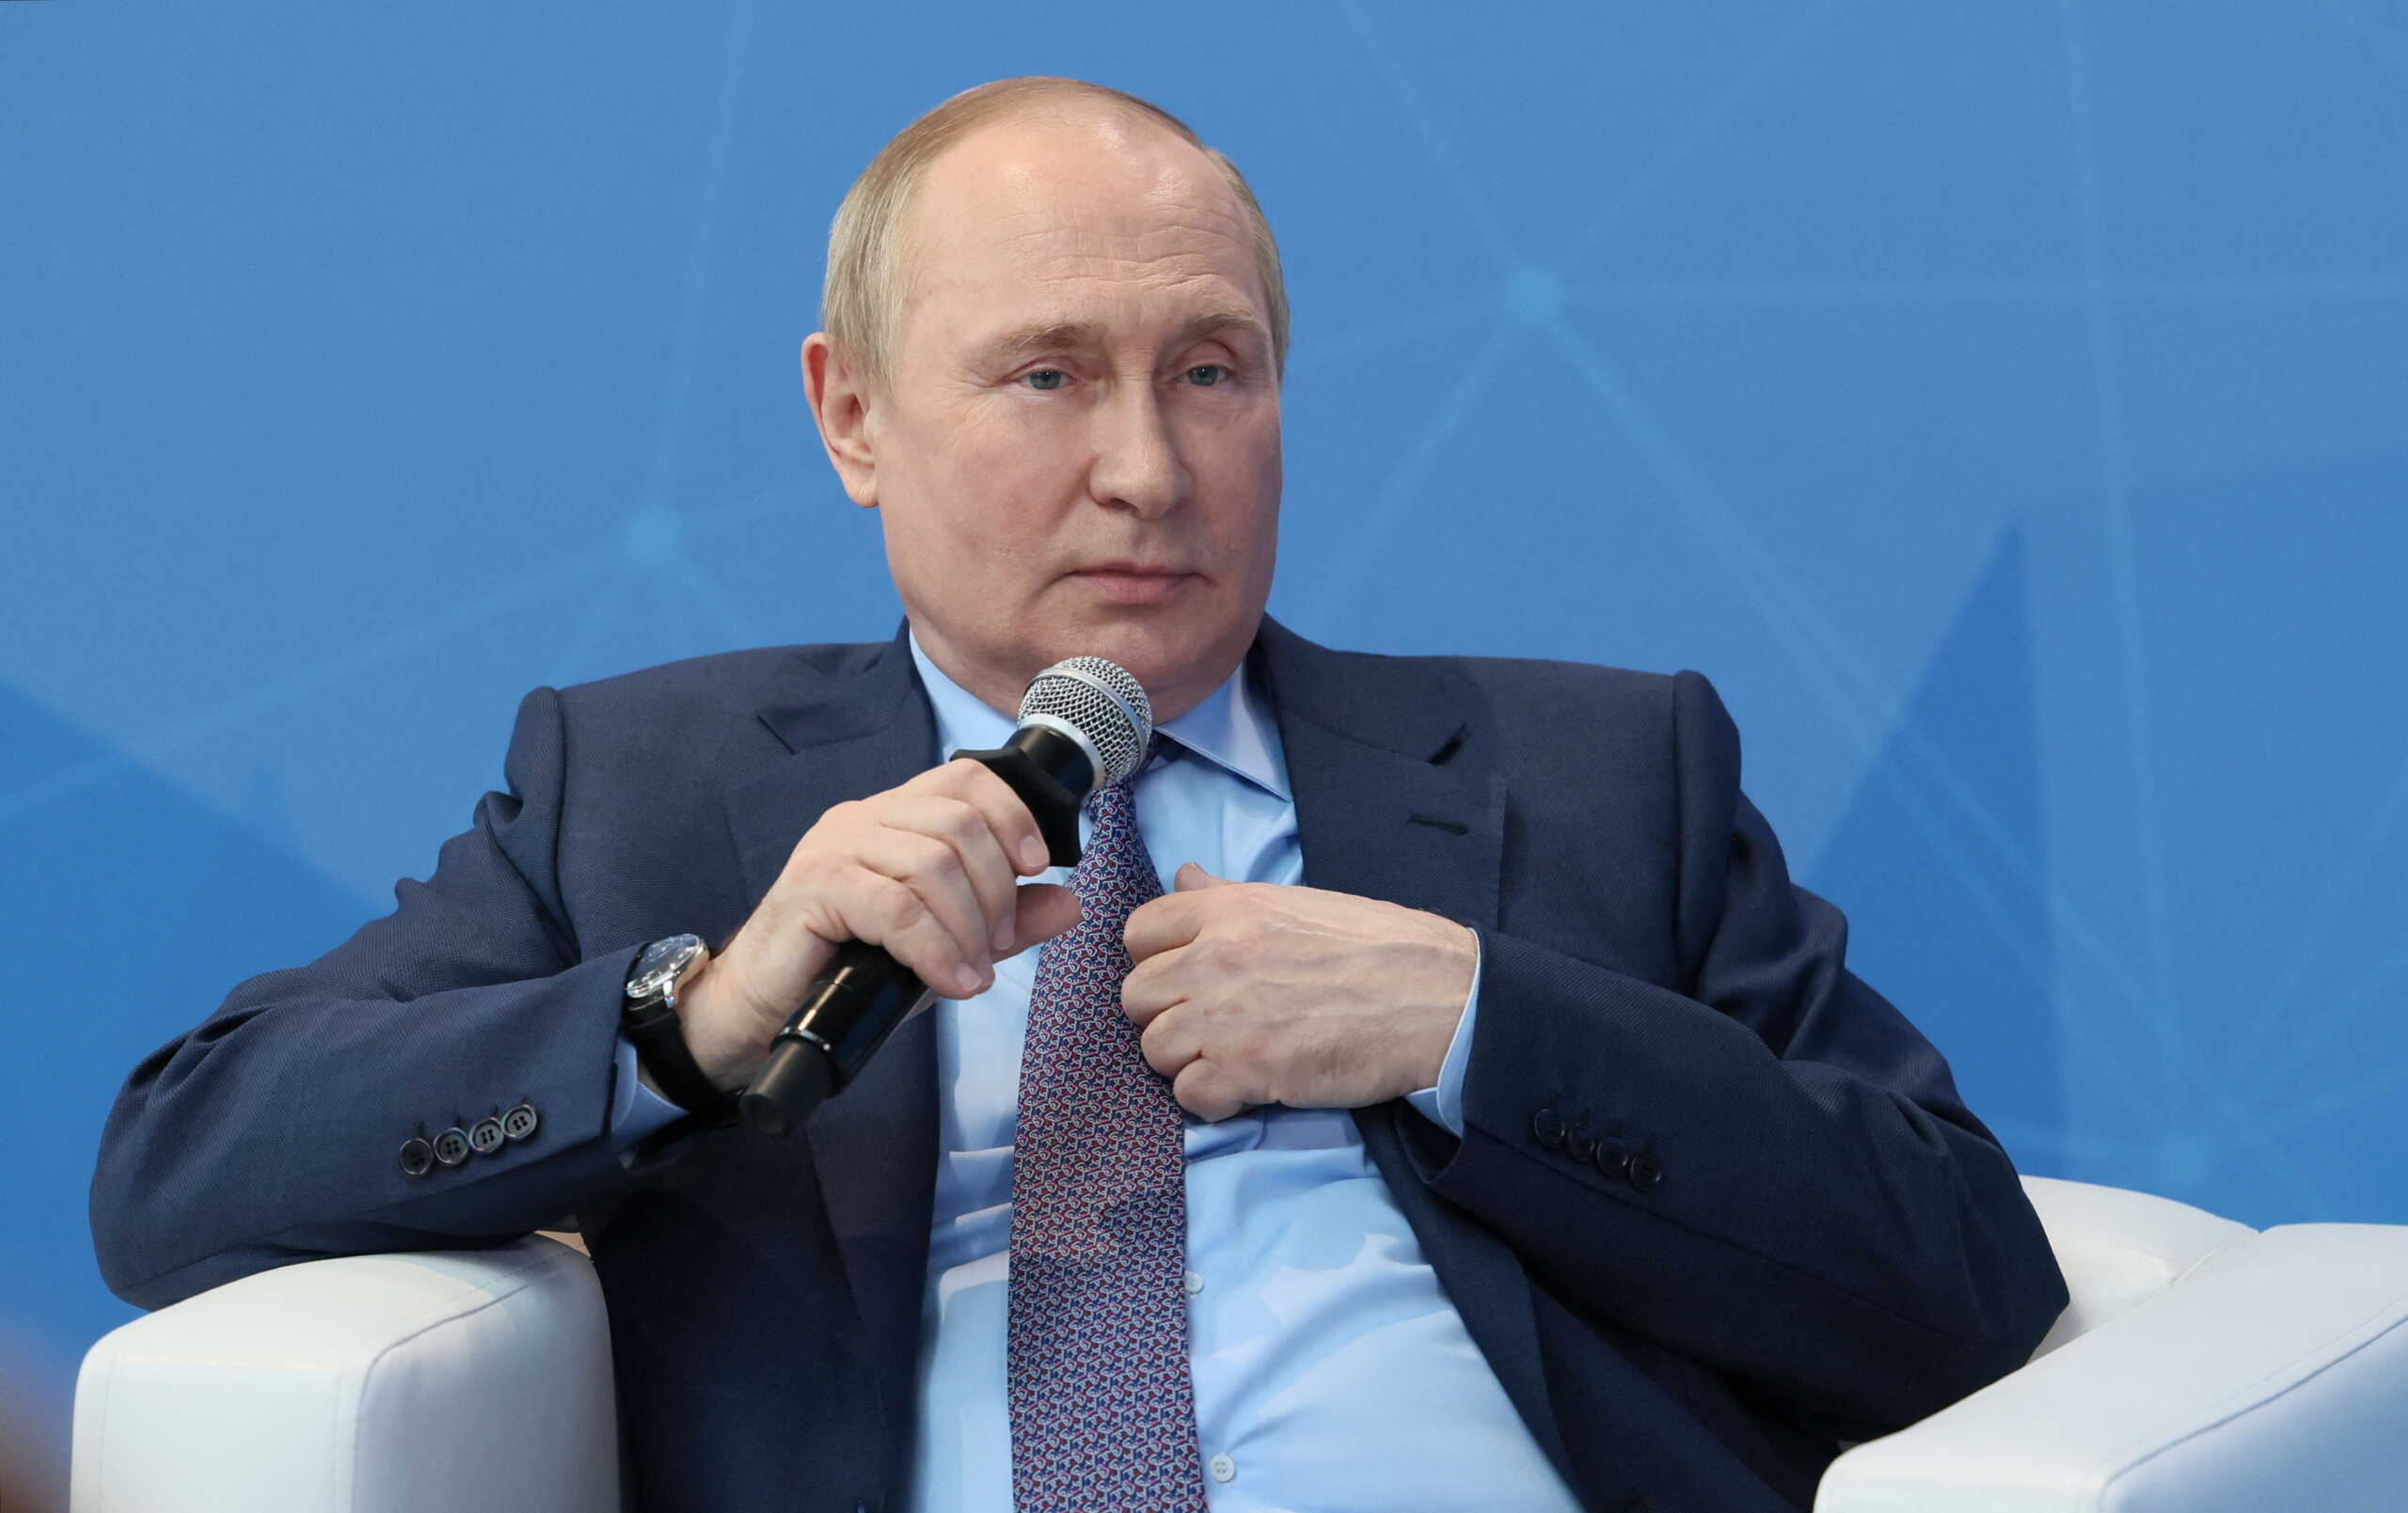 Ρωσία: Καθυστερεί η ομιλία του Βλαντιμίρ Πούτιν στο Παγκόσμιο Οικονομικό Φόρουμ λόγω χάκερ